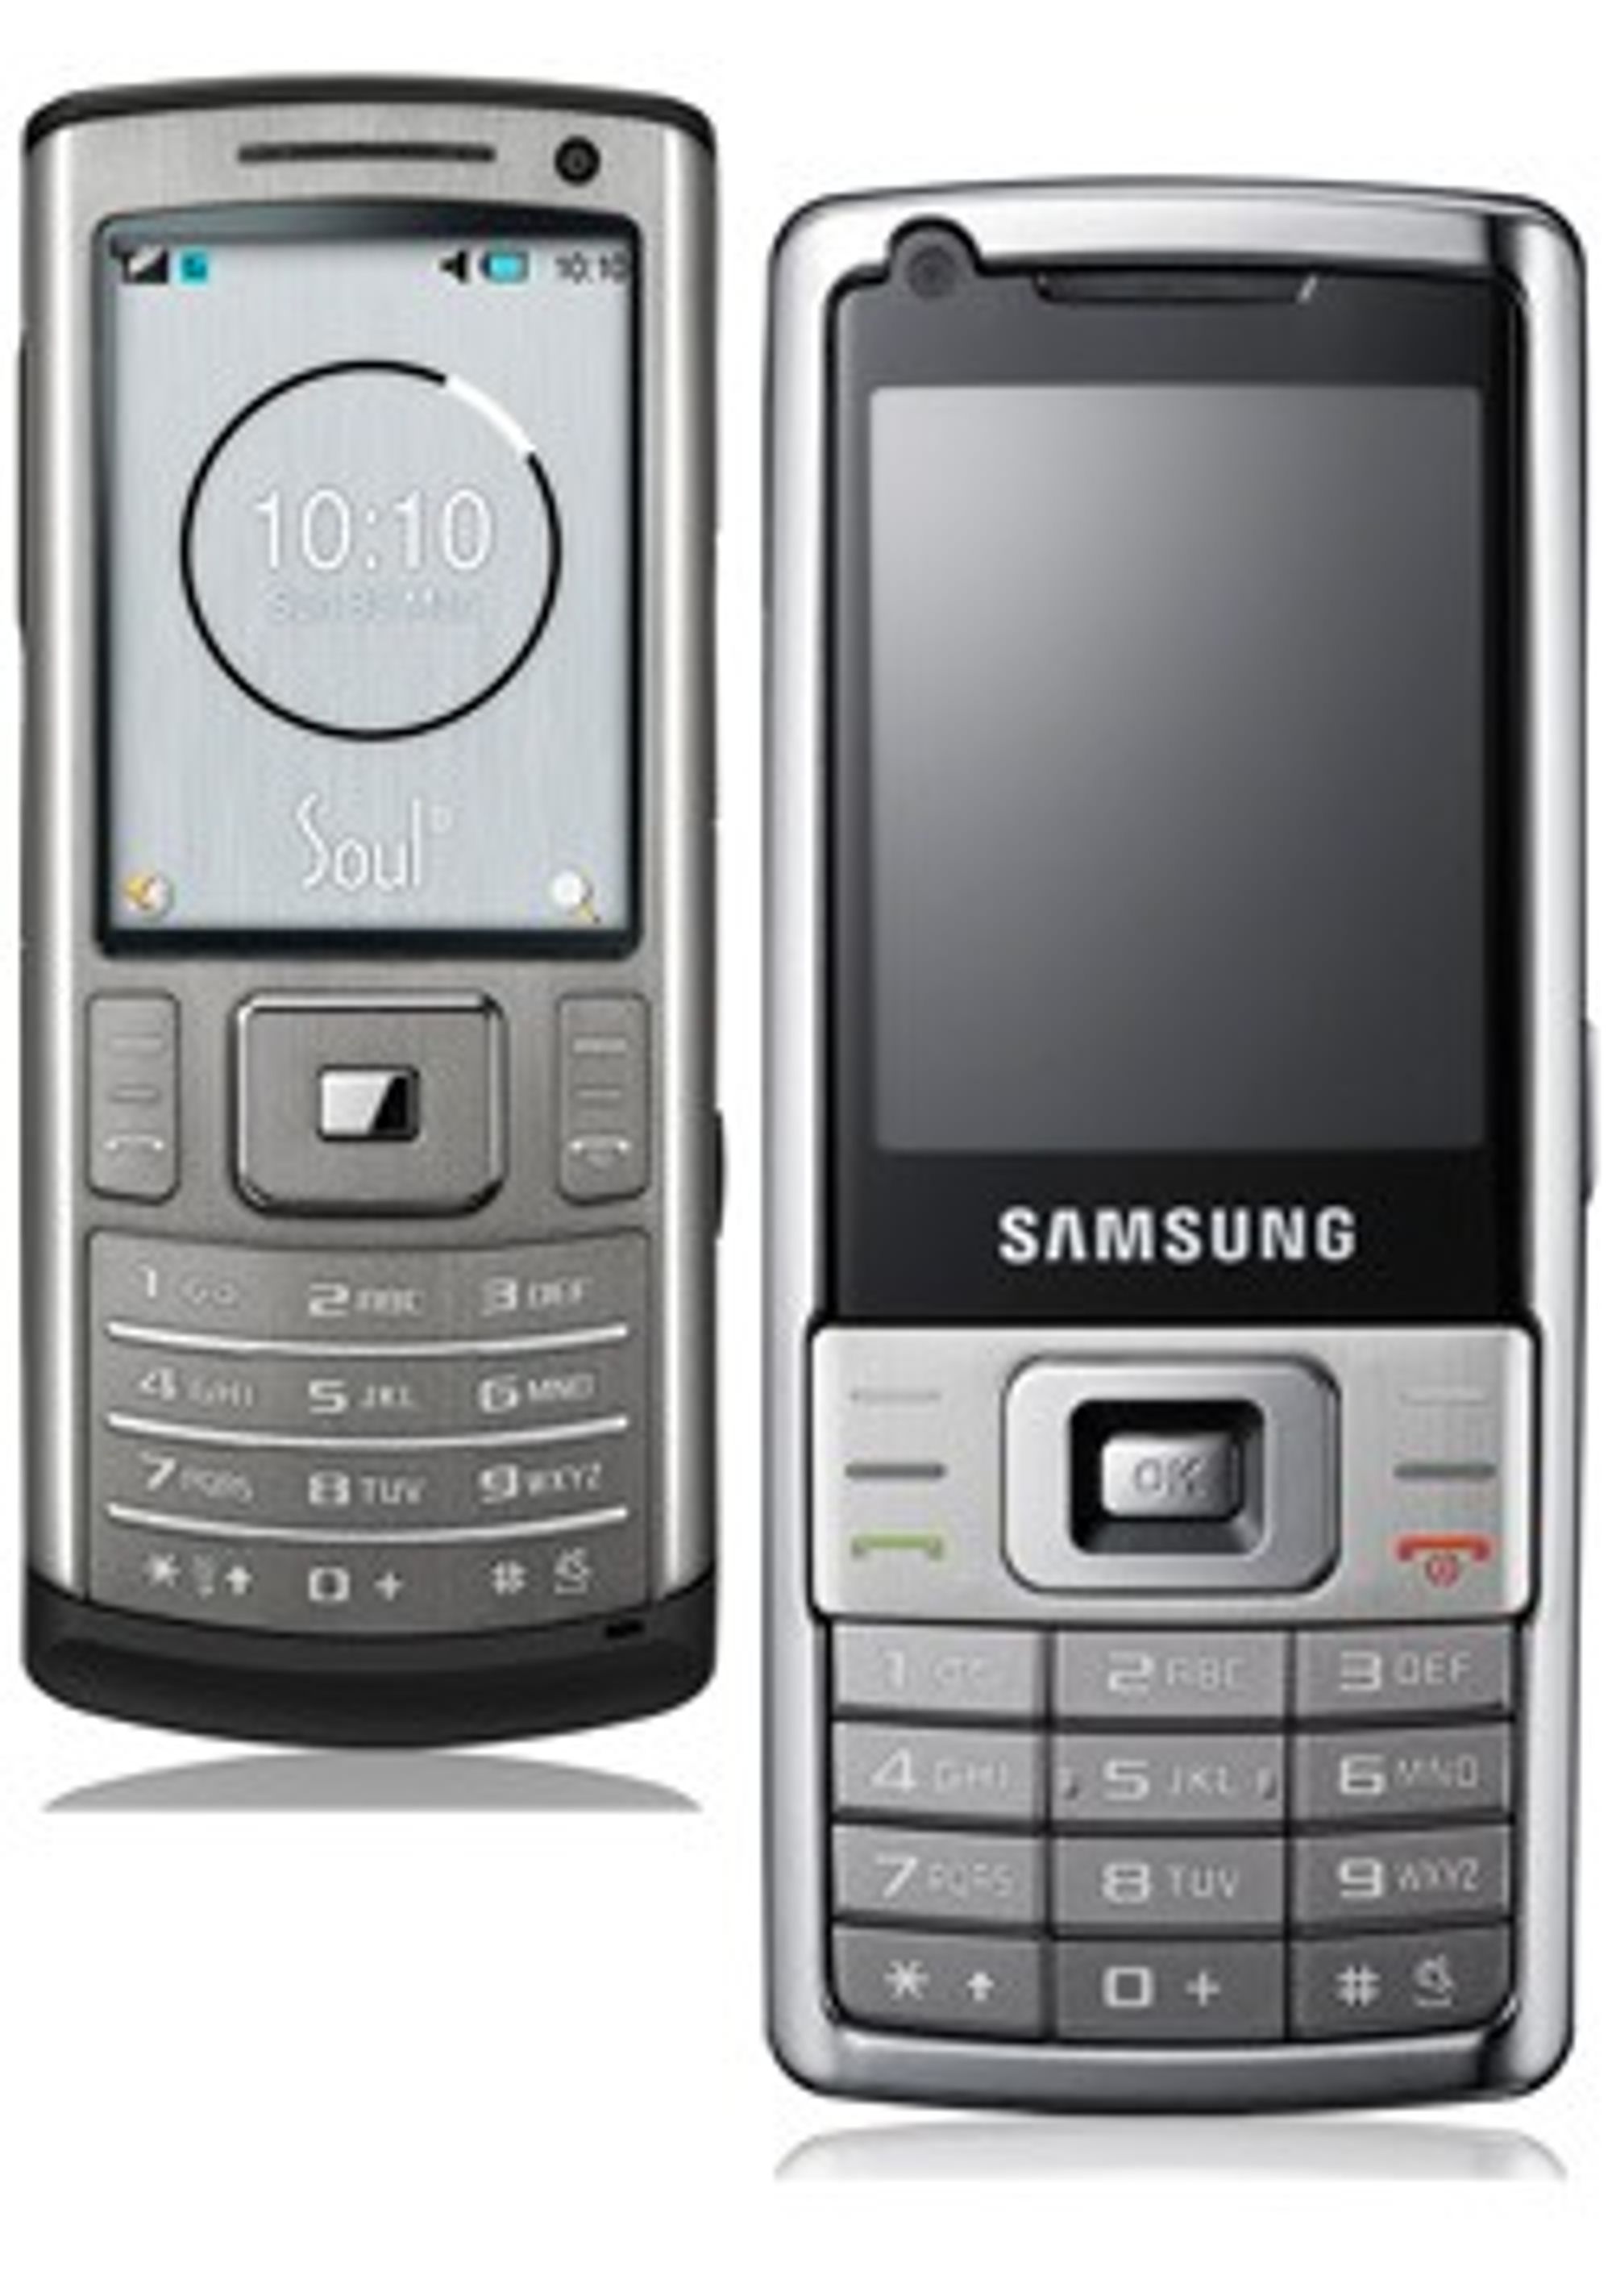 Samsung SoulB og L700.